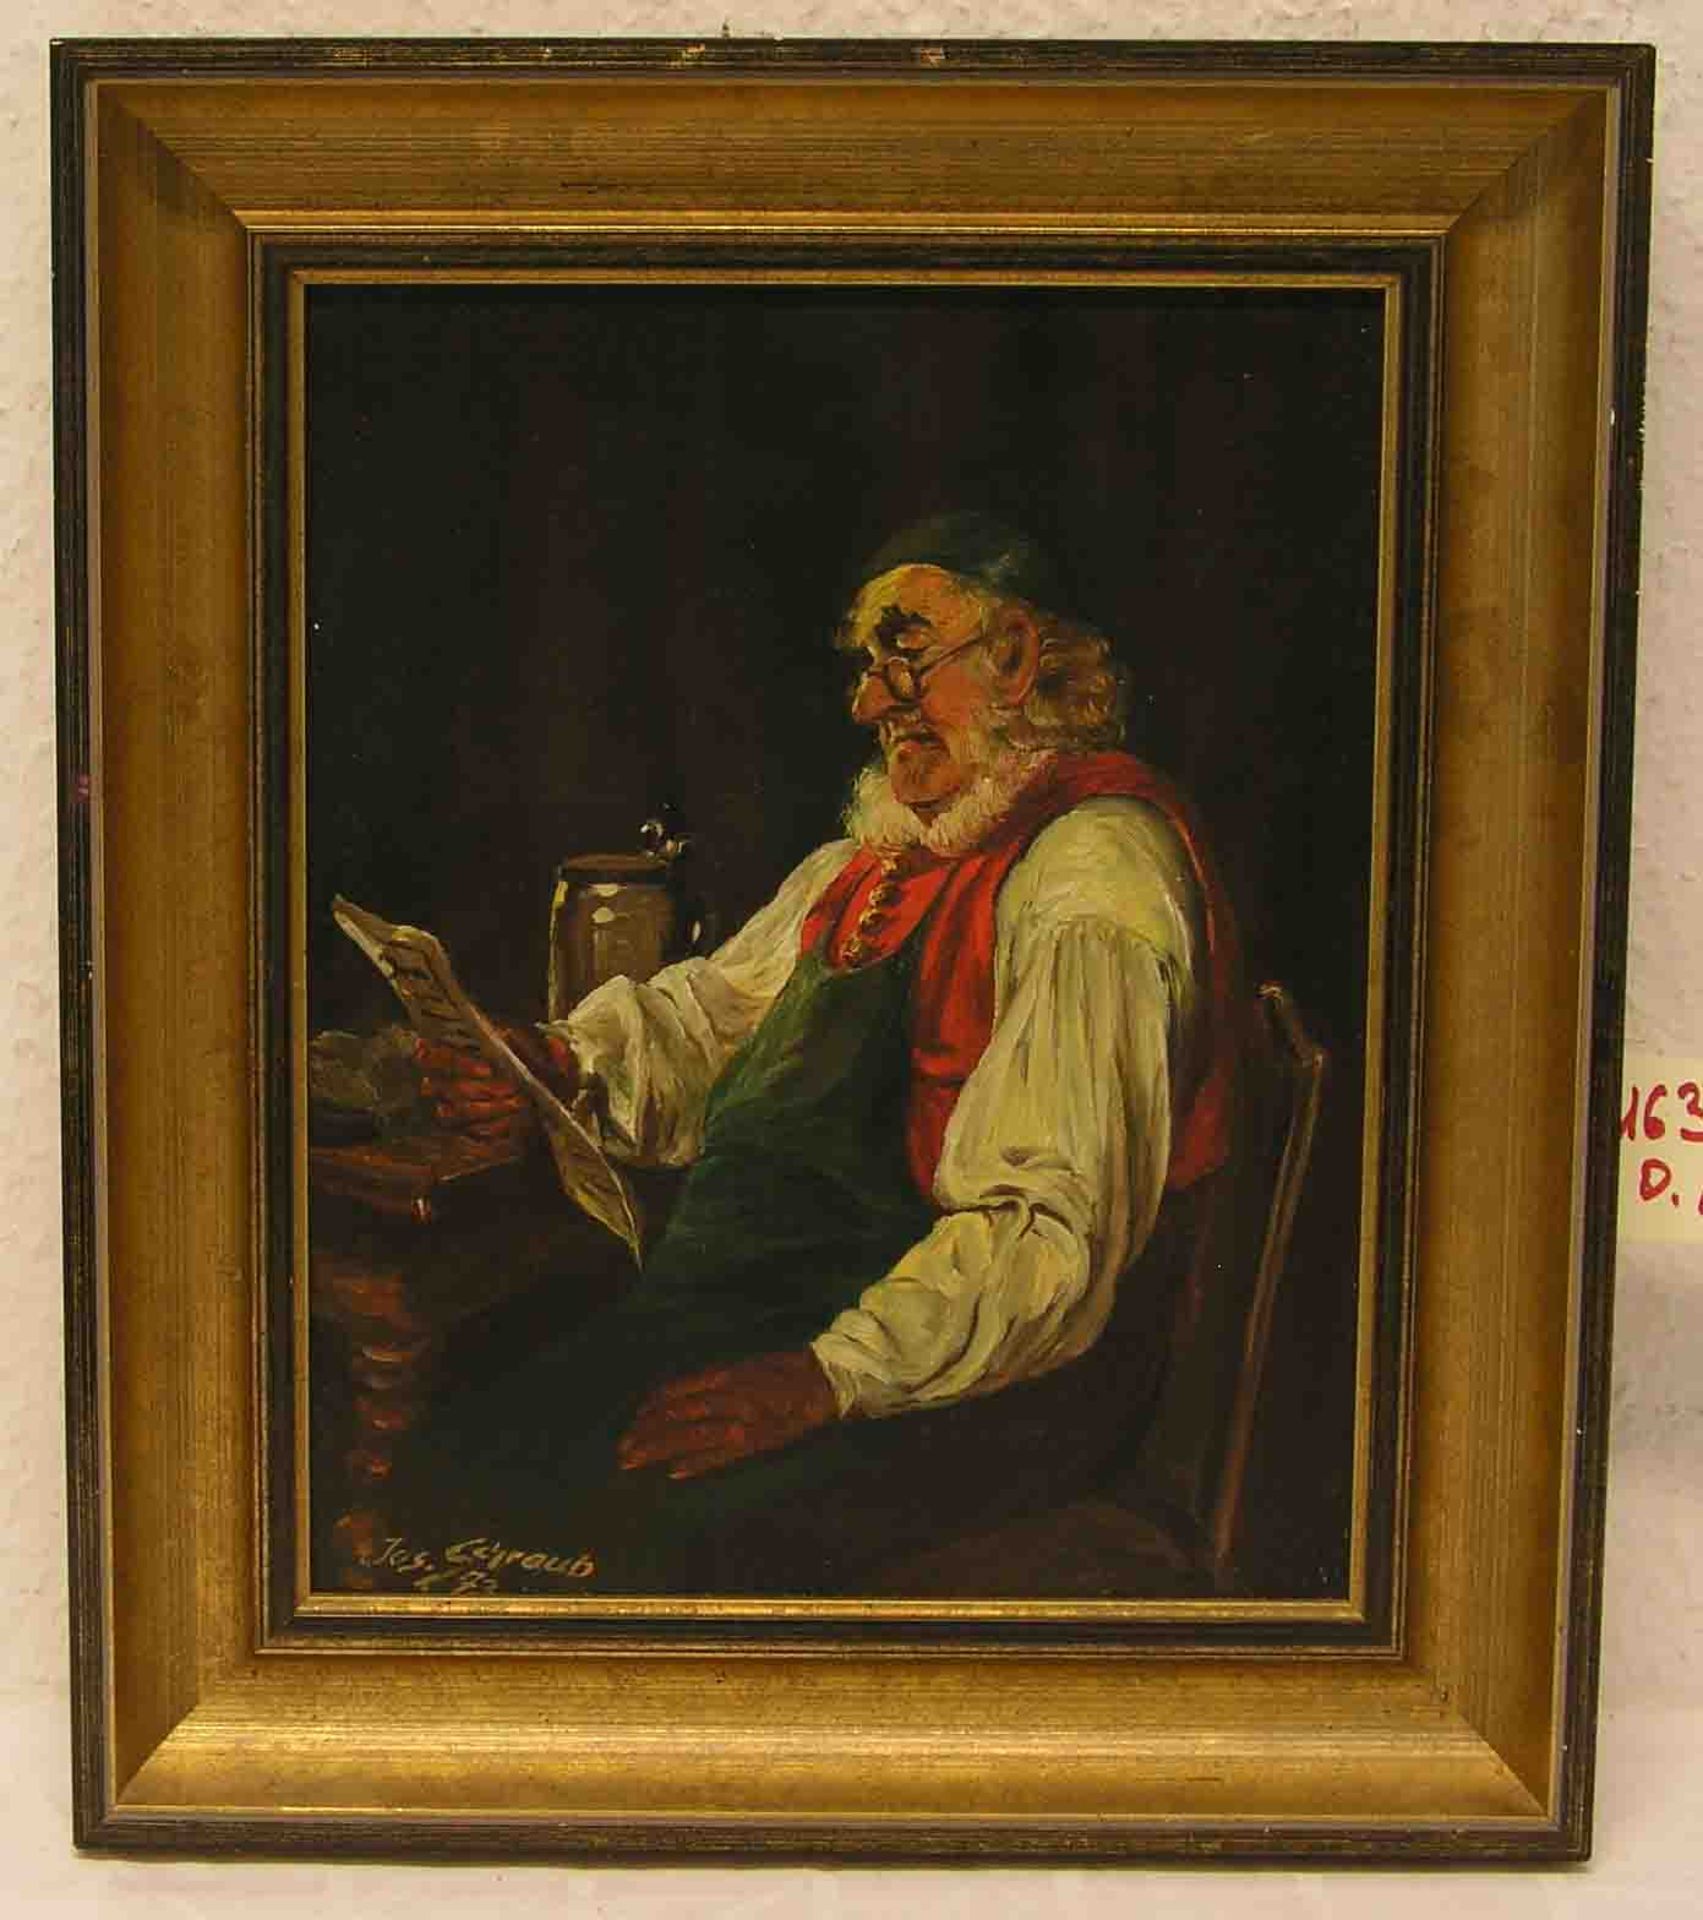 Schraub, Jos.: "Der Briefleser". Öl/Lwd., signiert, (19)73. 28 x 22cm. Rahmen.